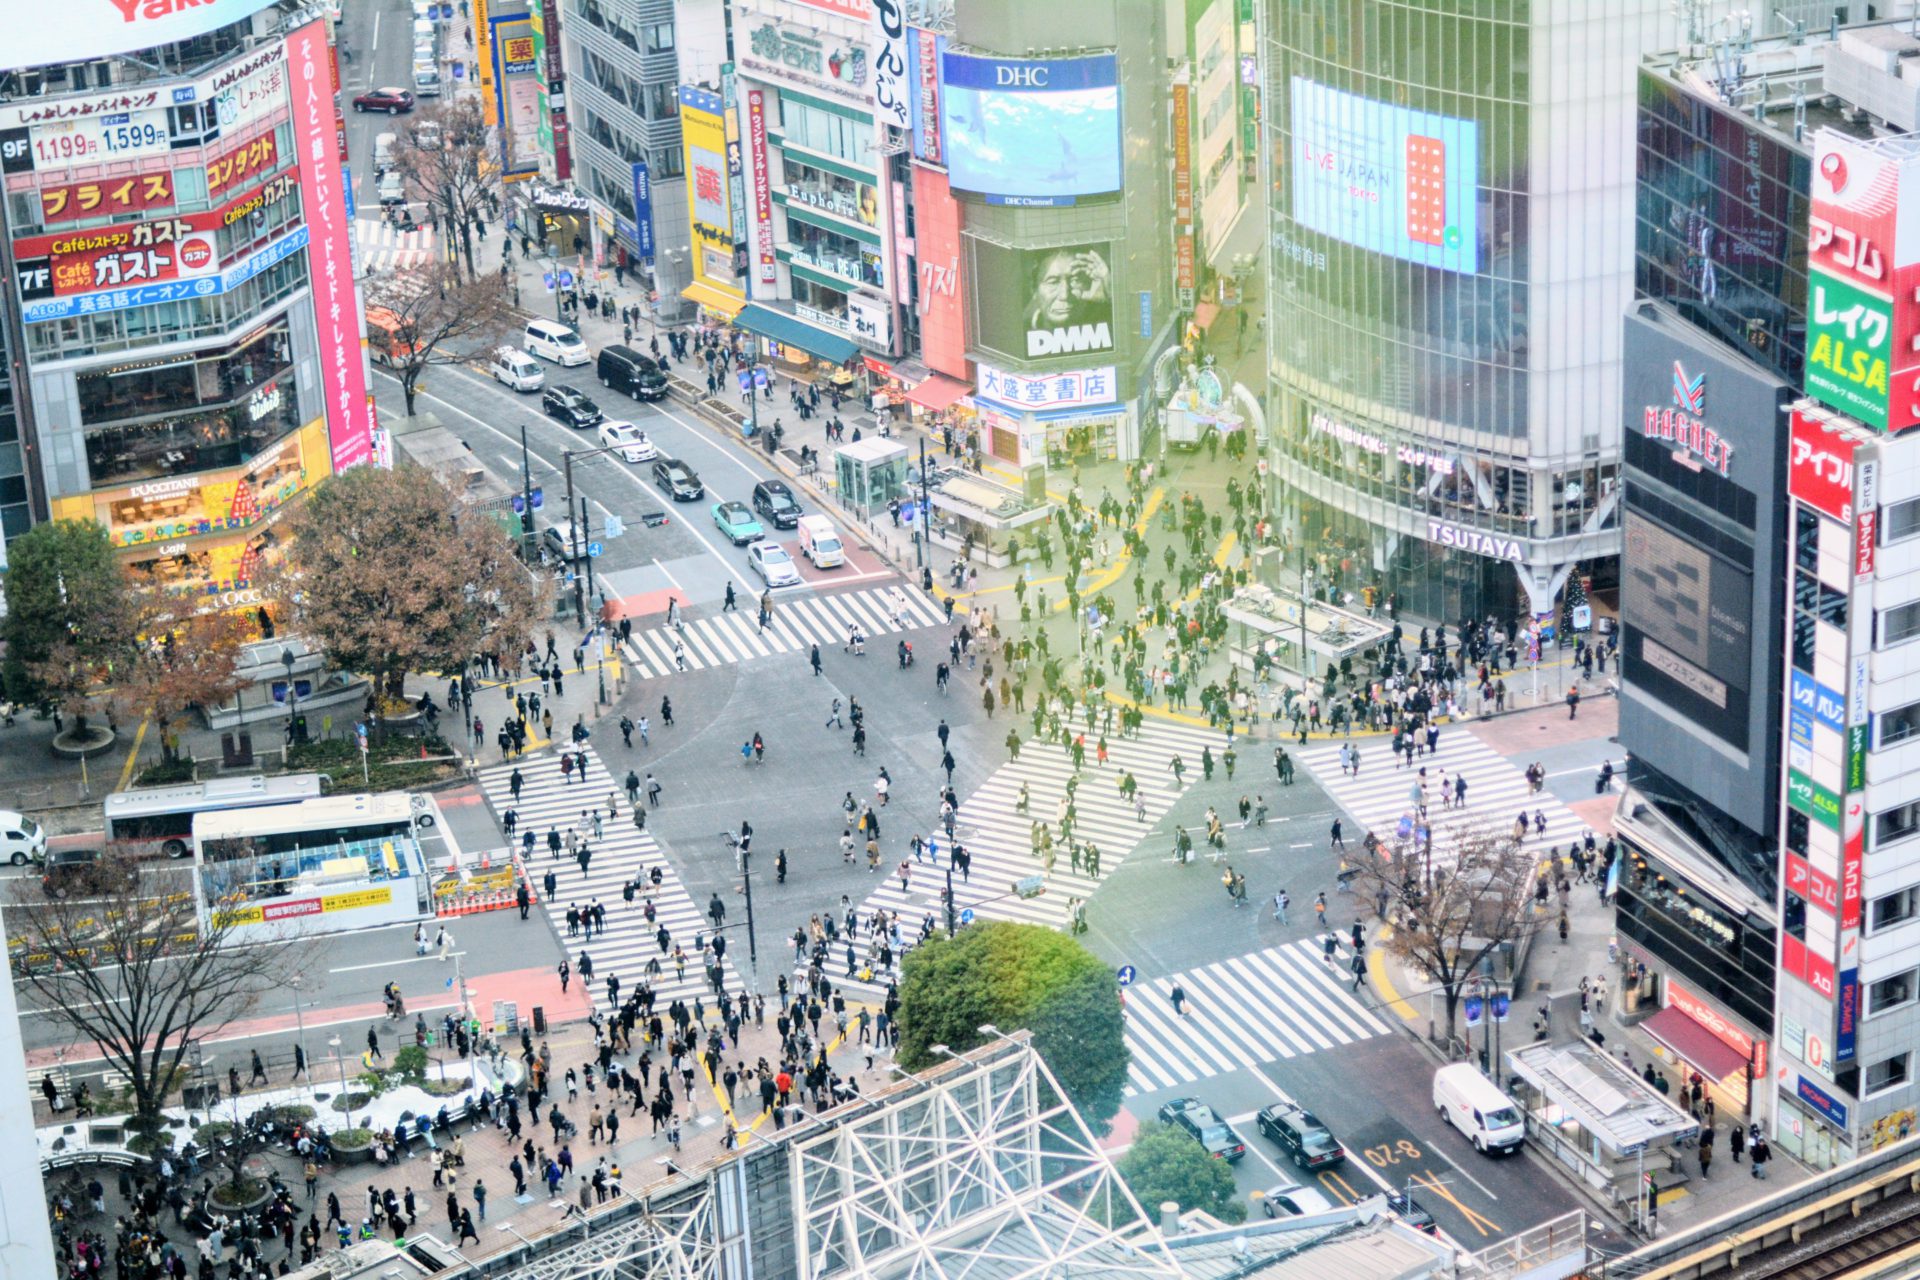 足利市 渋谷スクランブル交差点 のセットが撮影所としてオープンしたって 栃木つーしん 栃木通信